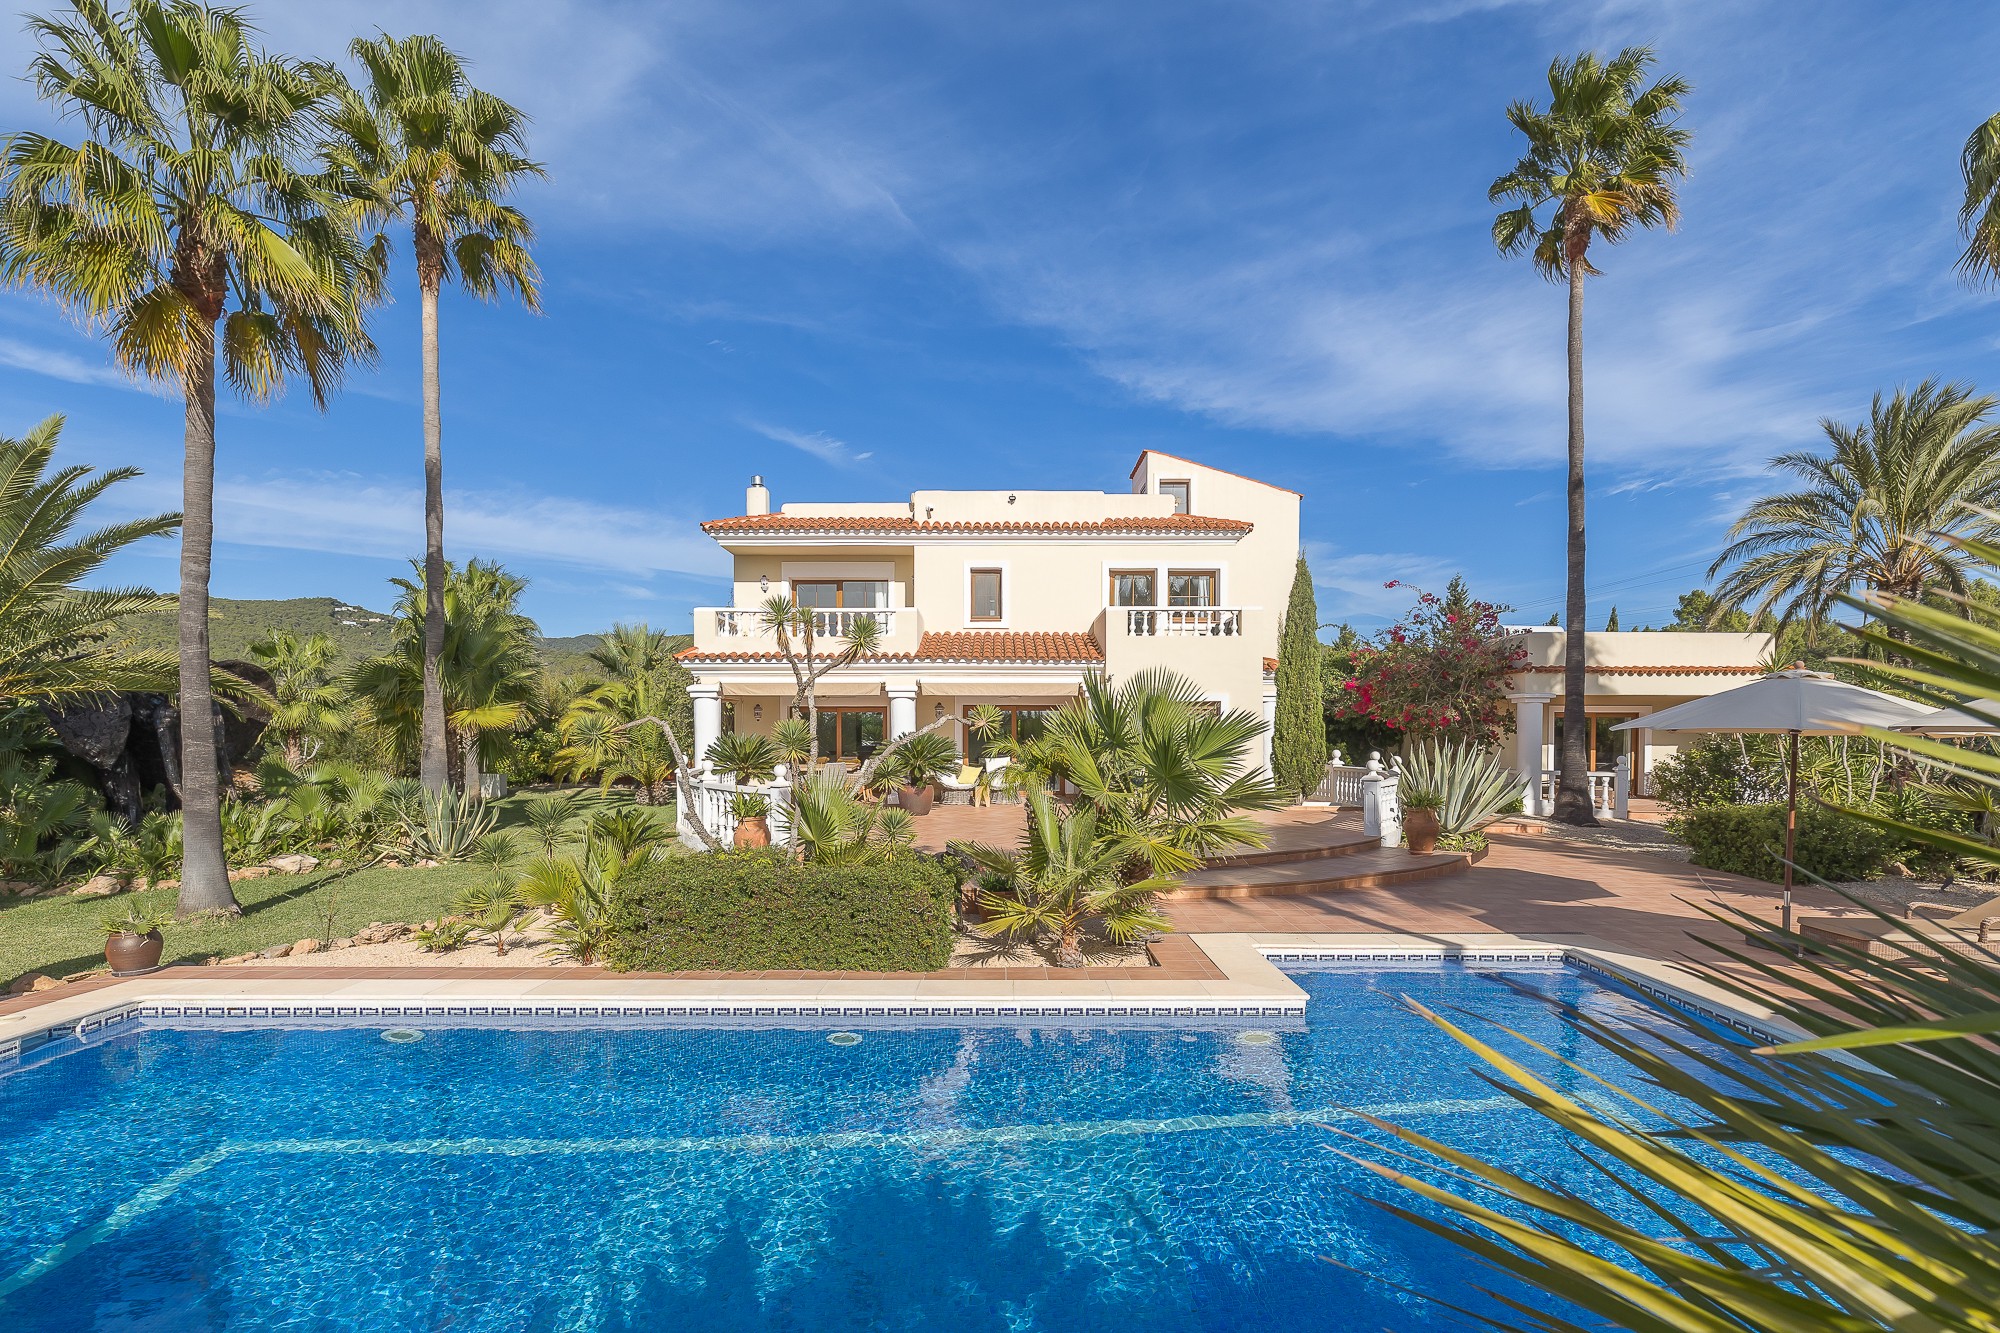 Elegant Mediterranean villa in quiet location near Ibiza Town